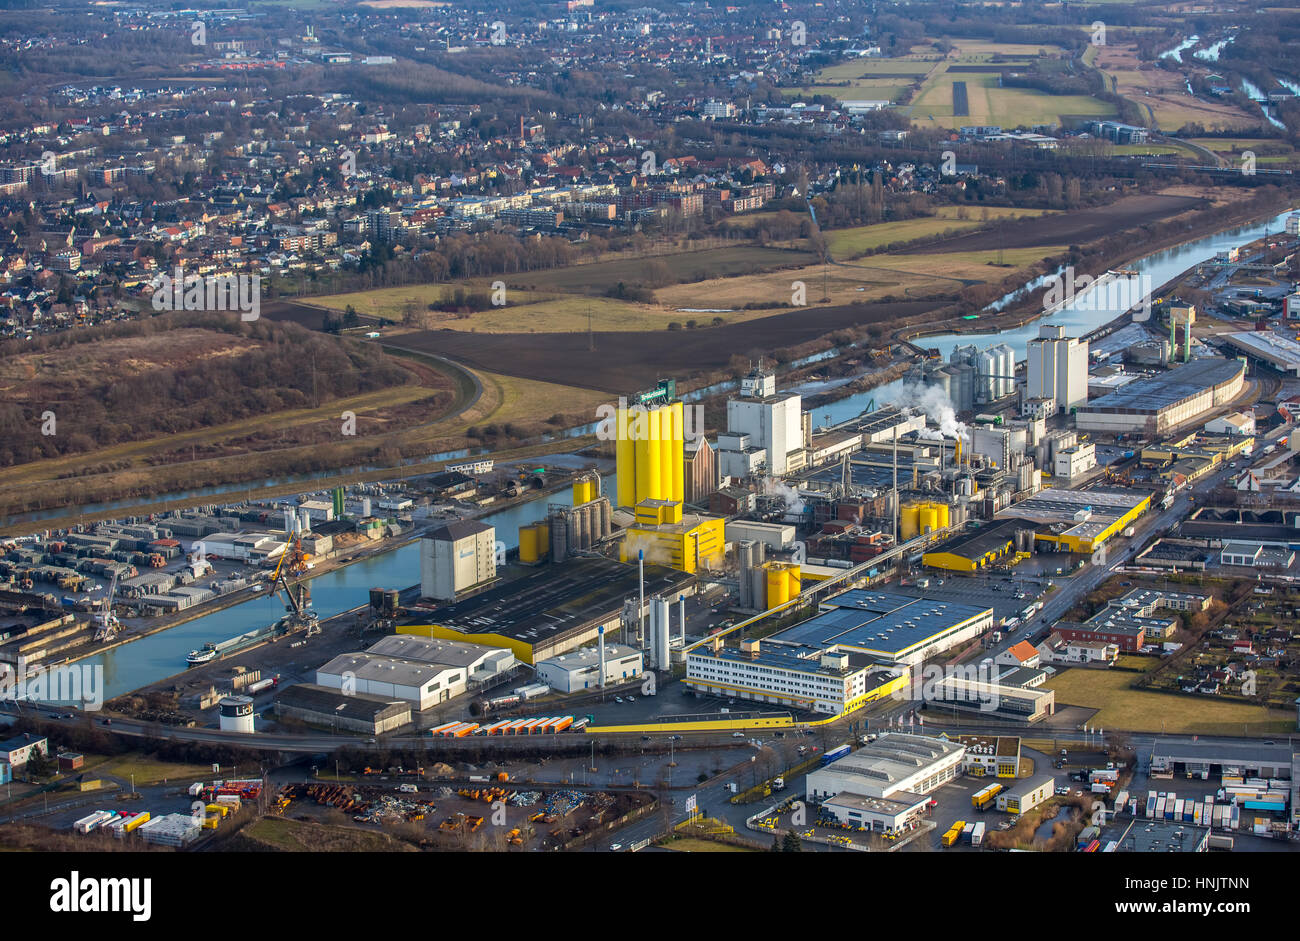 Port de Hamm, moulin à huile Brökelmann, producteur de pétrole, Hamm, Ruhr, Rhénanie du Nord-Westphalie, Allemagne Banque D'Images